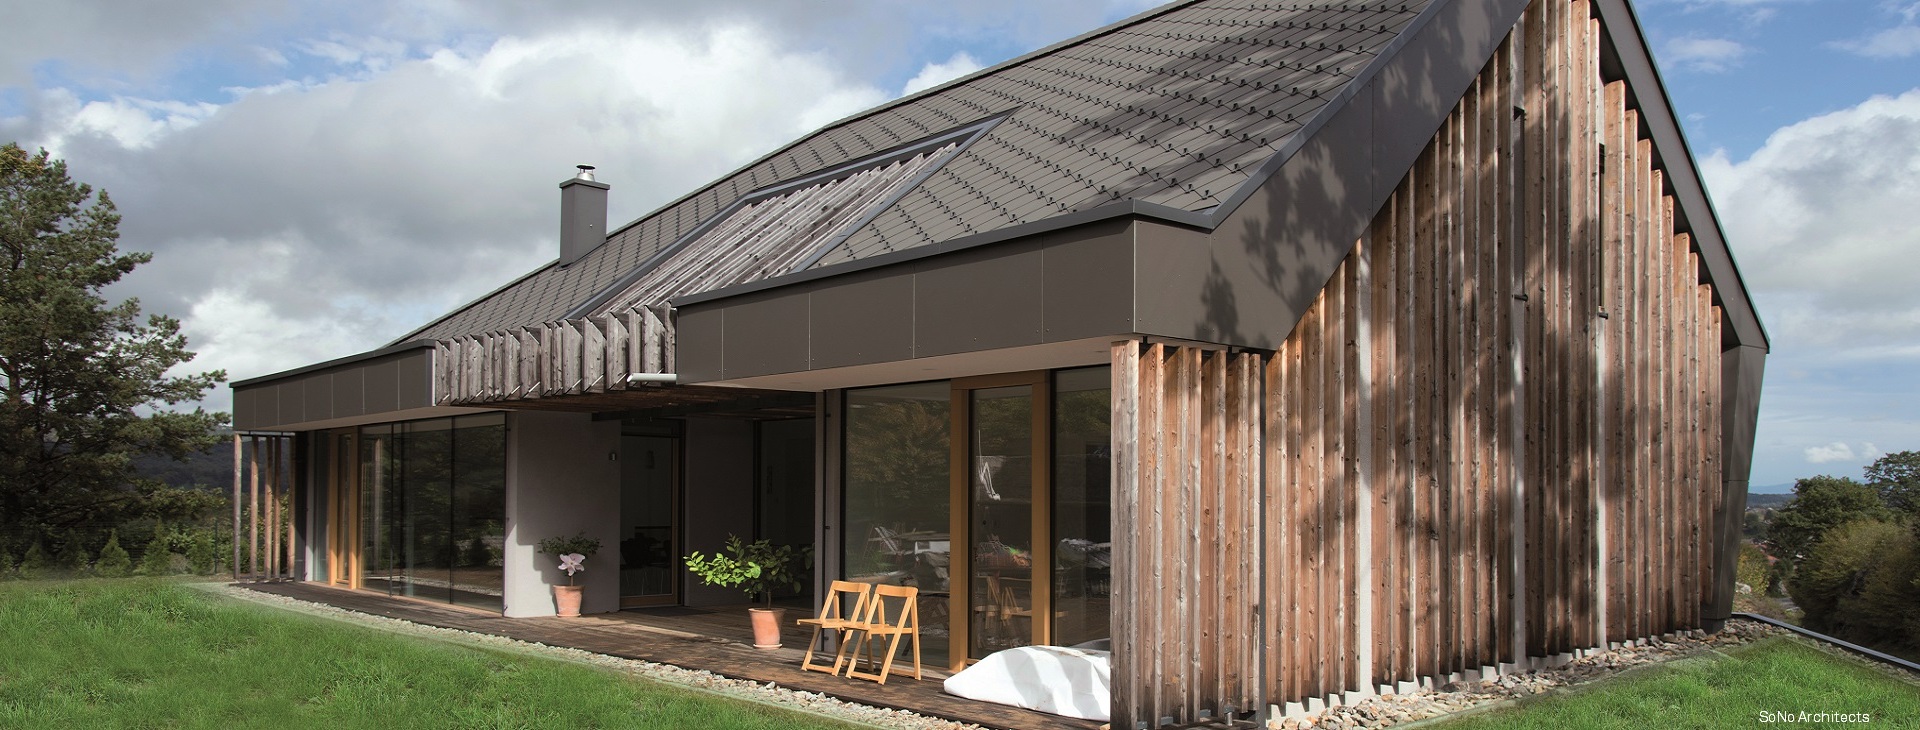 Sostenibilità, efficienza e stile: tutto in una casa costruita con pannelli X-LAM